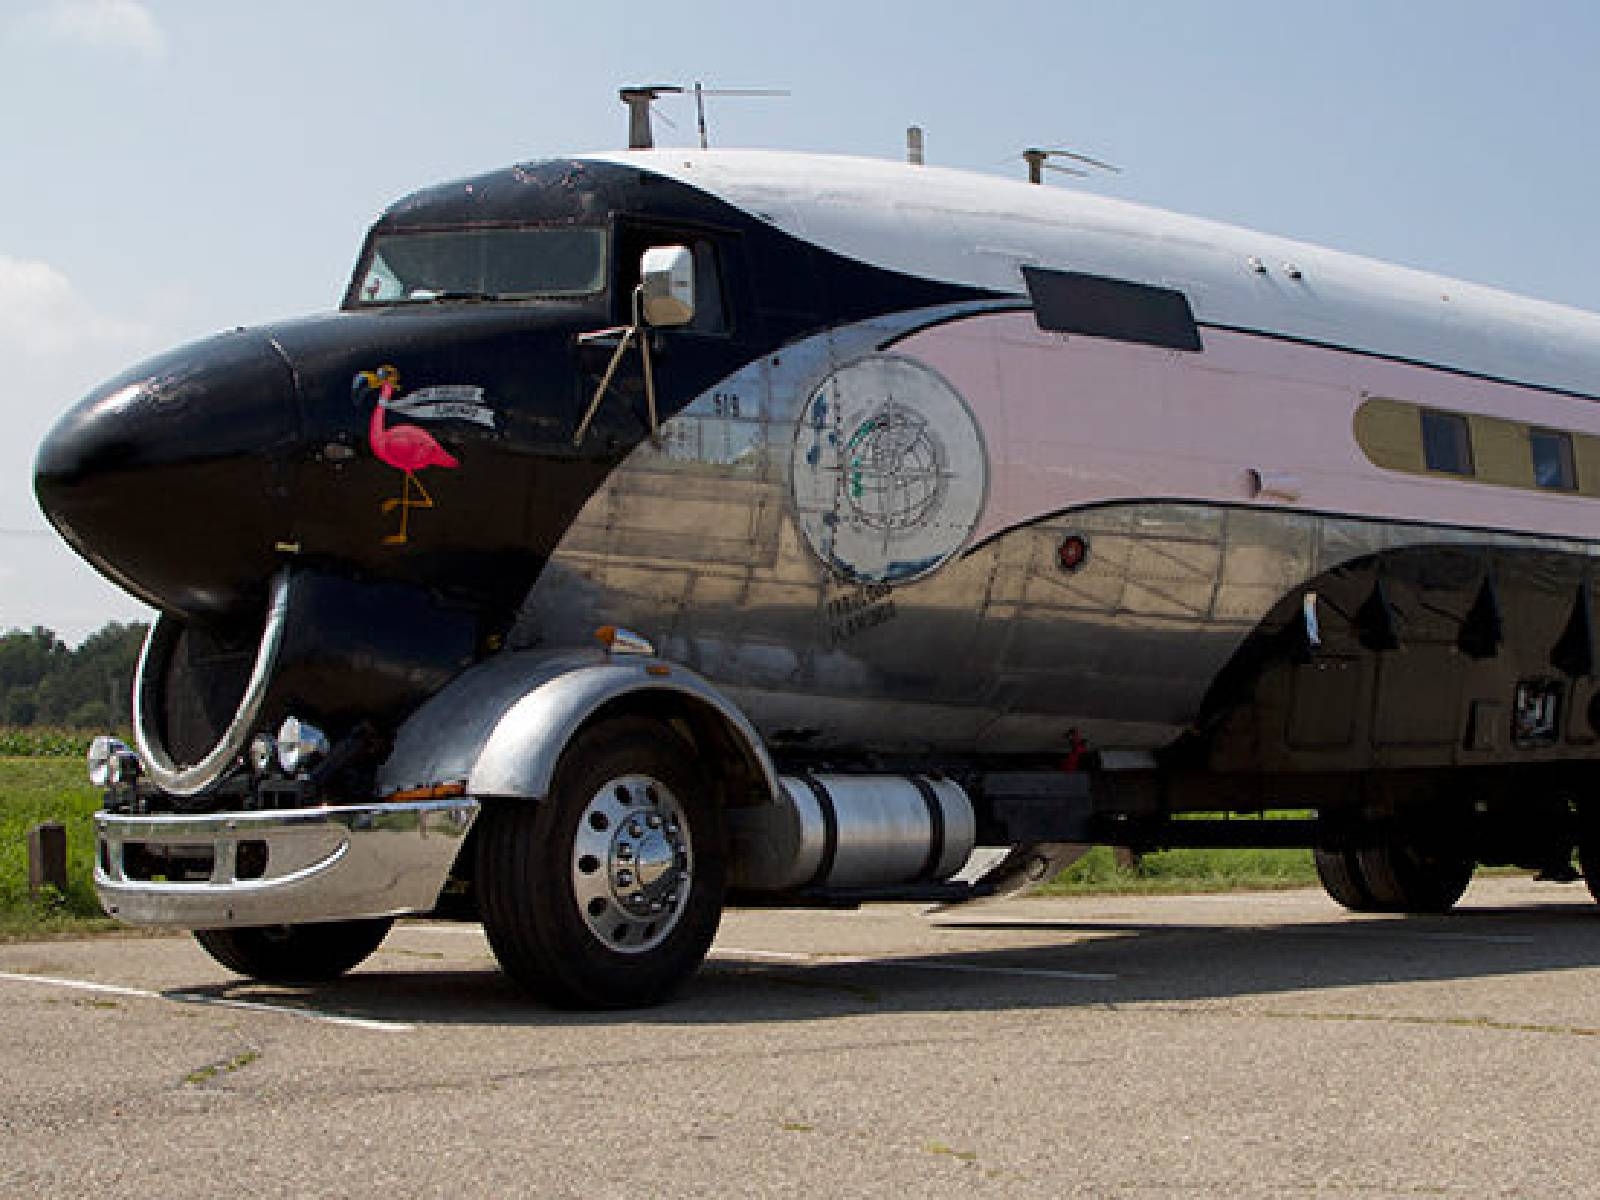 飛機加貨車變「超大露營車」！美國士官長花 1 年改造車款夢想成真～